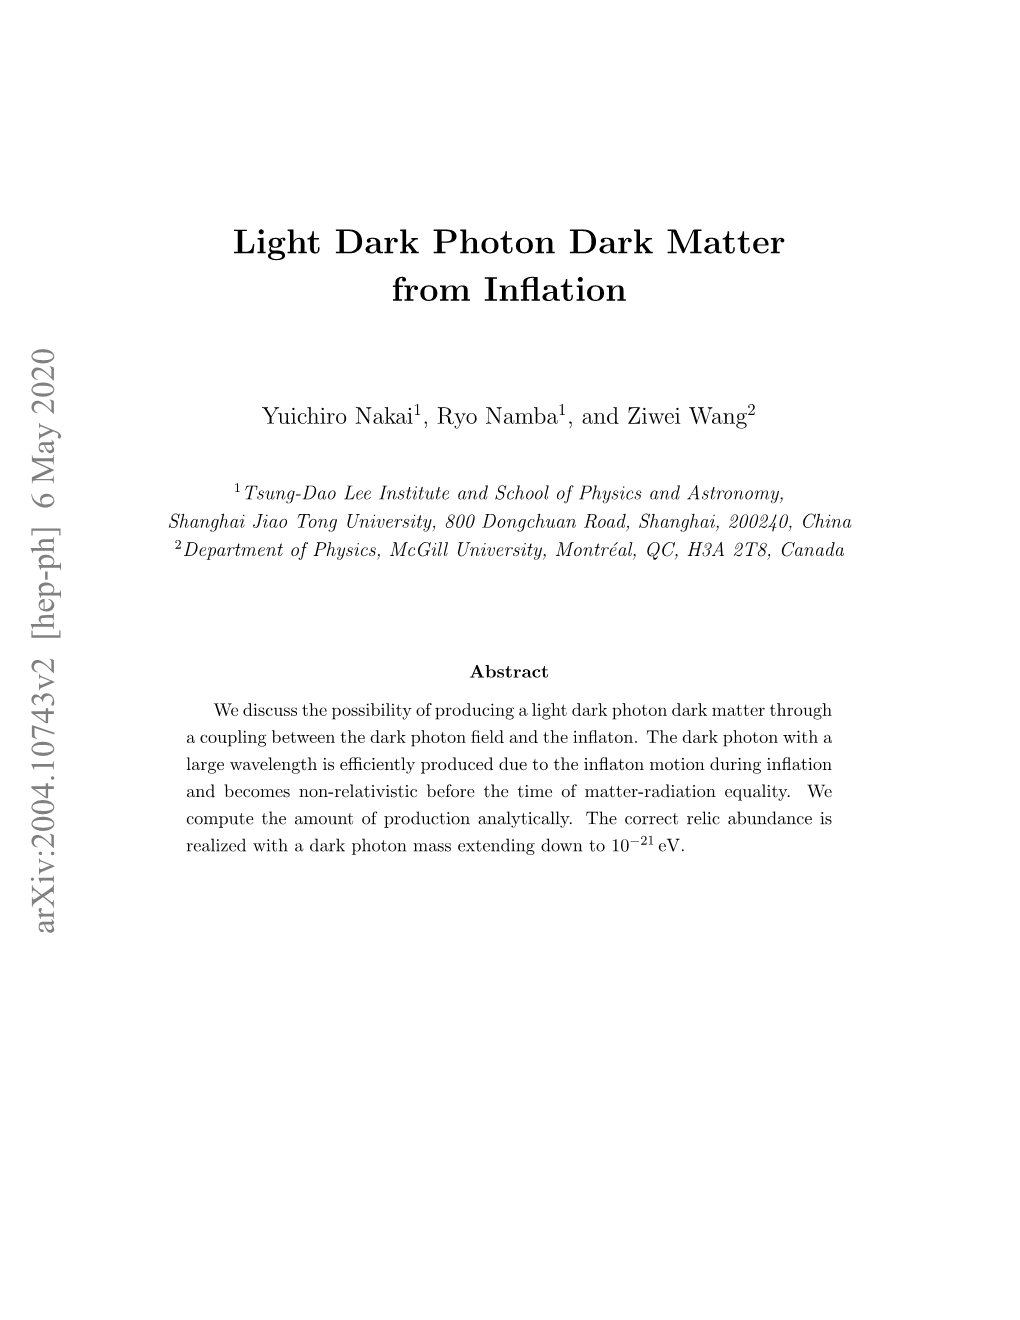 Light Dark Photon Dark Matter from Inflation Arxiv:2004.10743V2